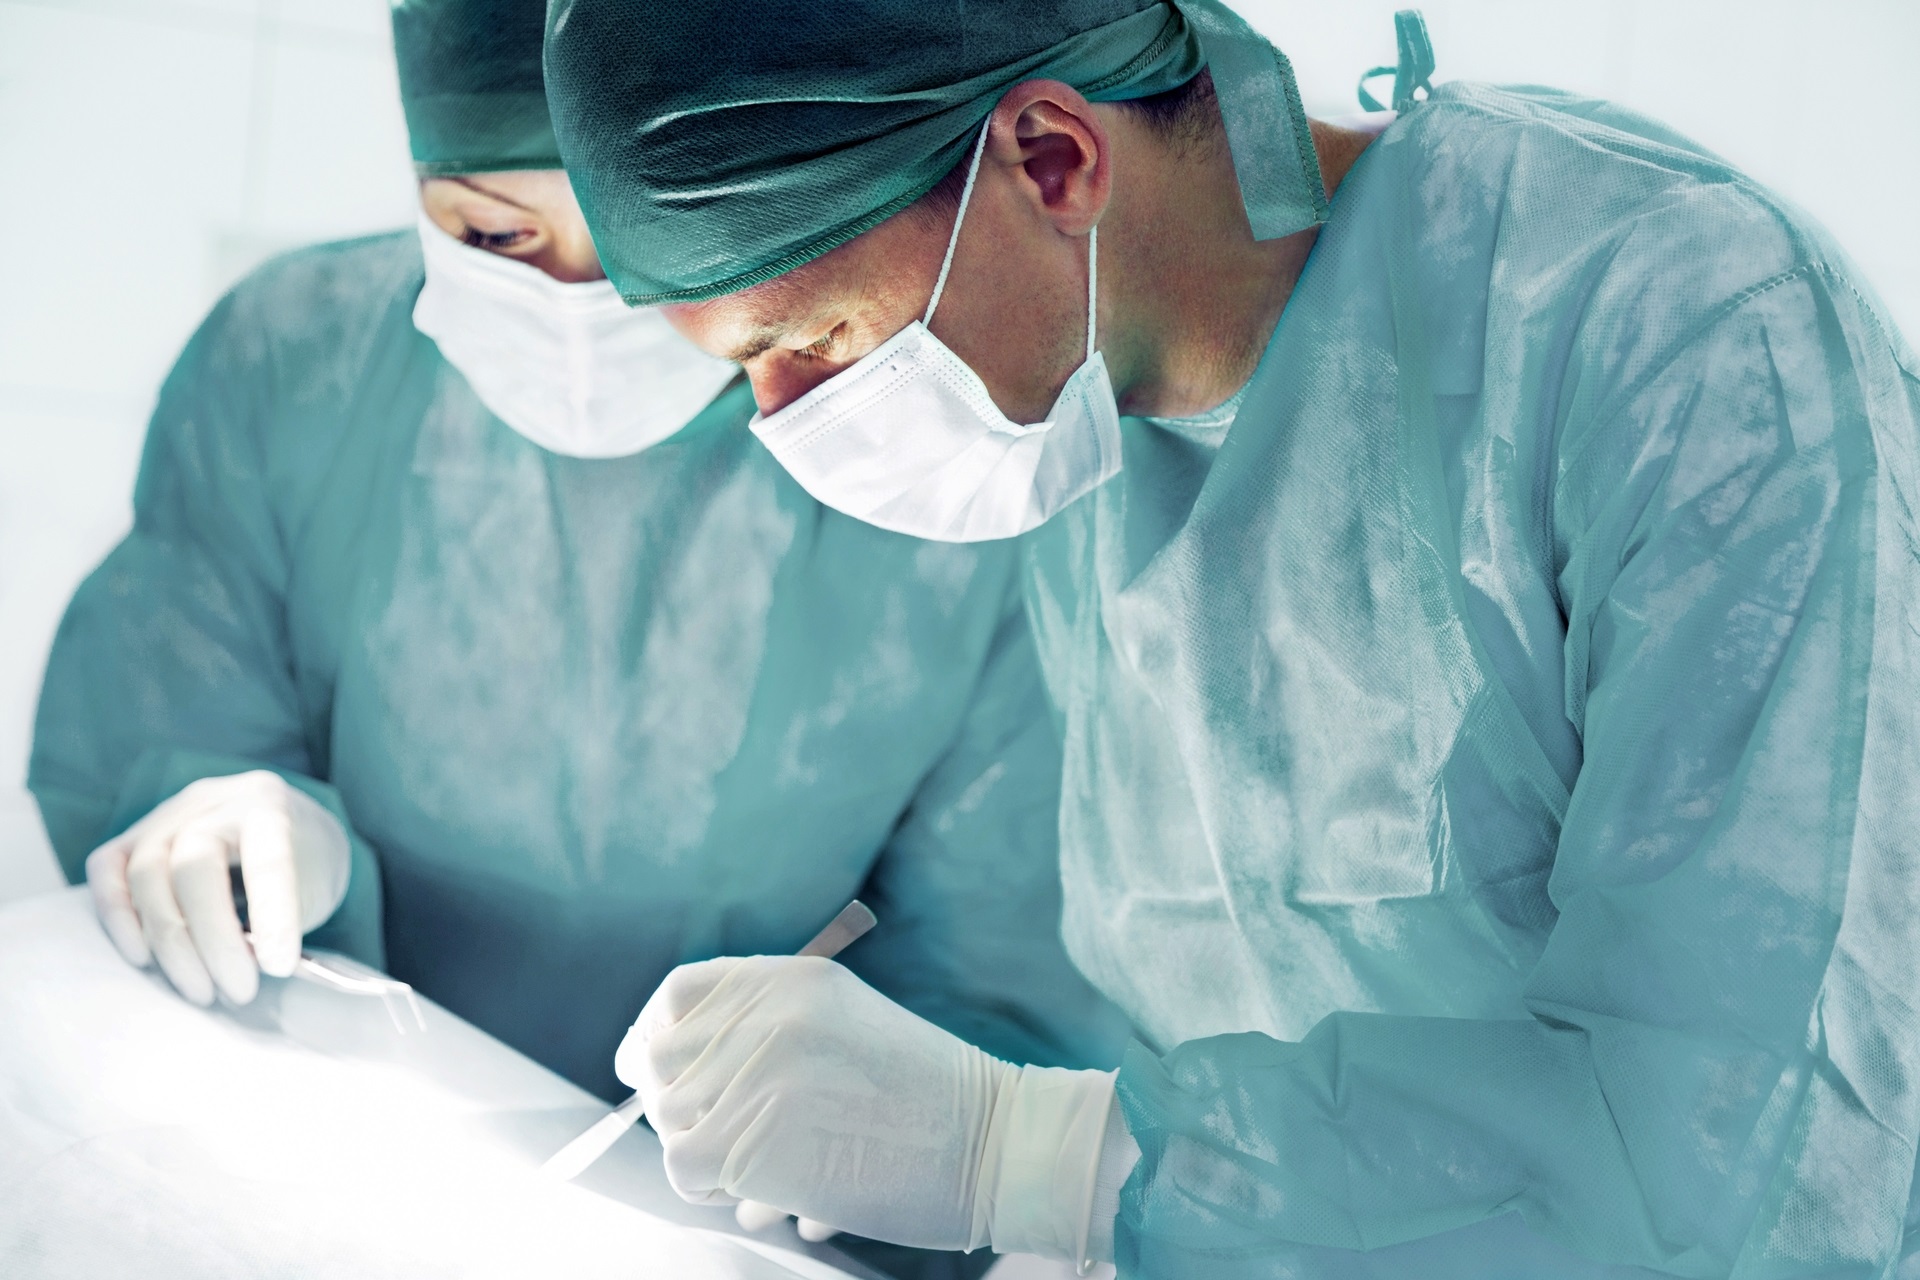 Arthroscopic Surgery in Iran